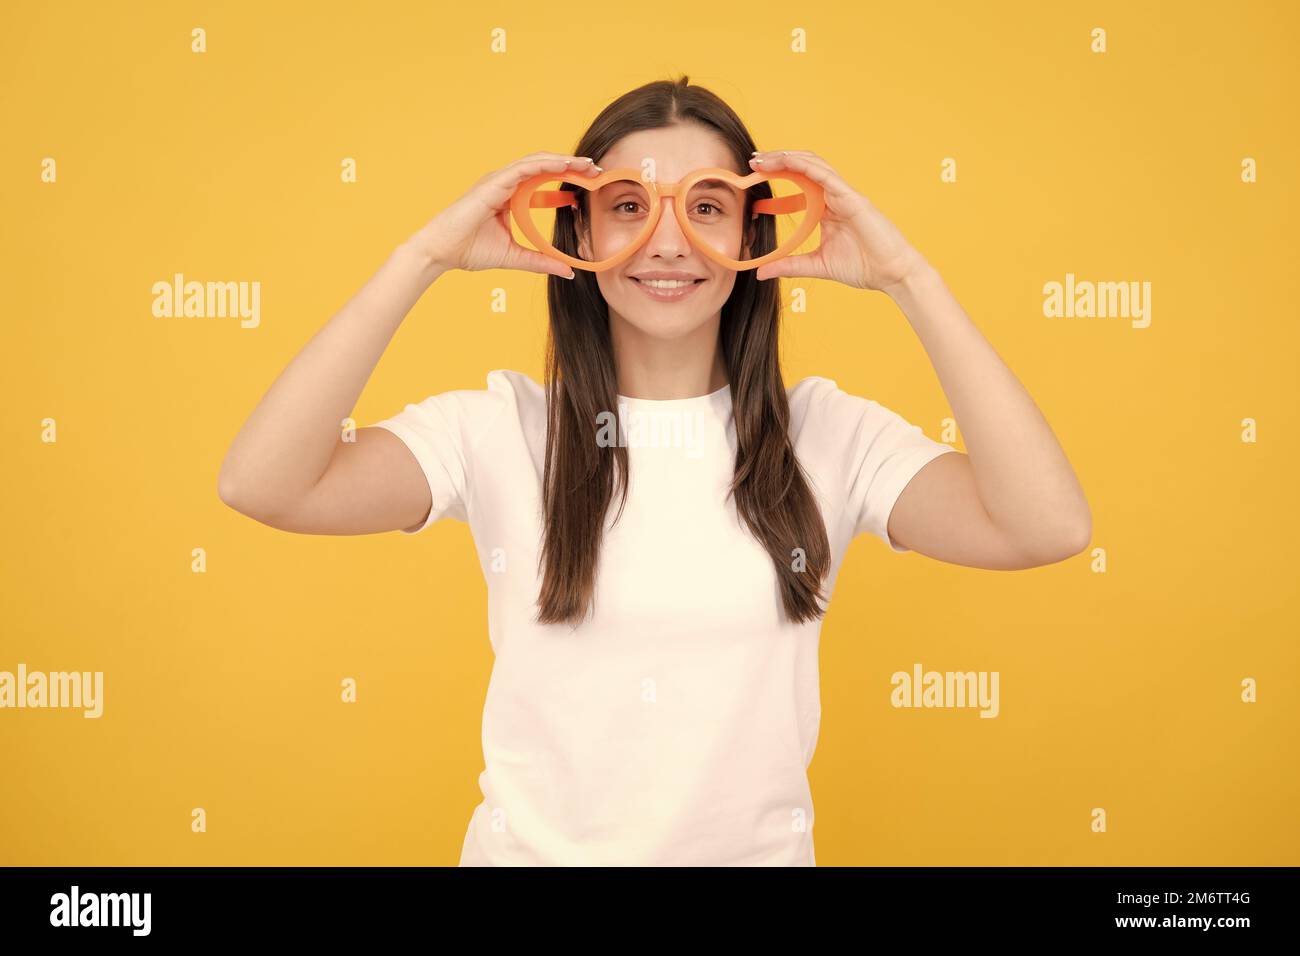 Portrait eines lustigen Mädchens mit coolen Partybrillen. Fröhliches junges Mädchen lächelt mit herzförmigen Gläsern auf gelbem Hintergrund. Stockfoto